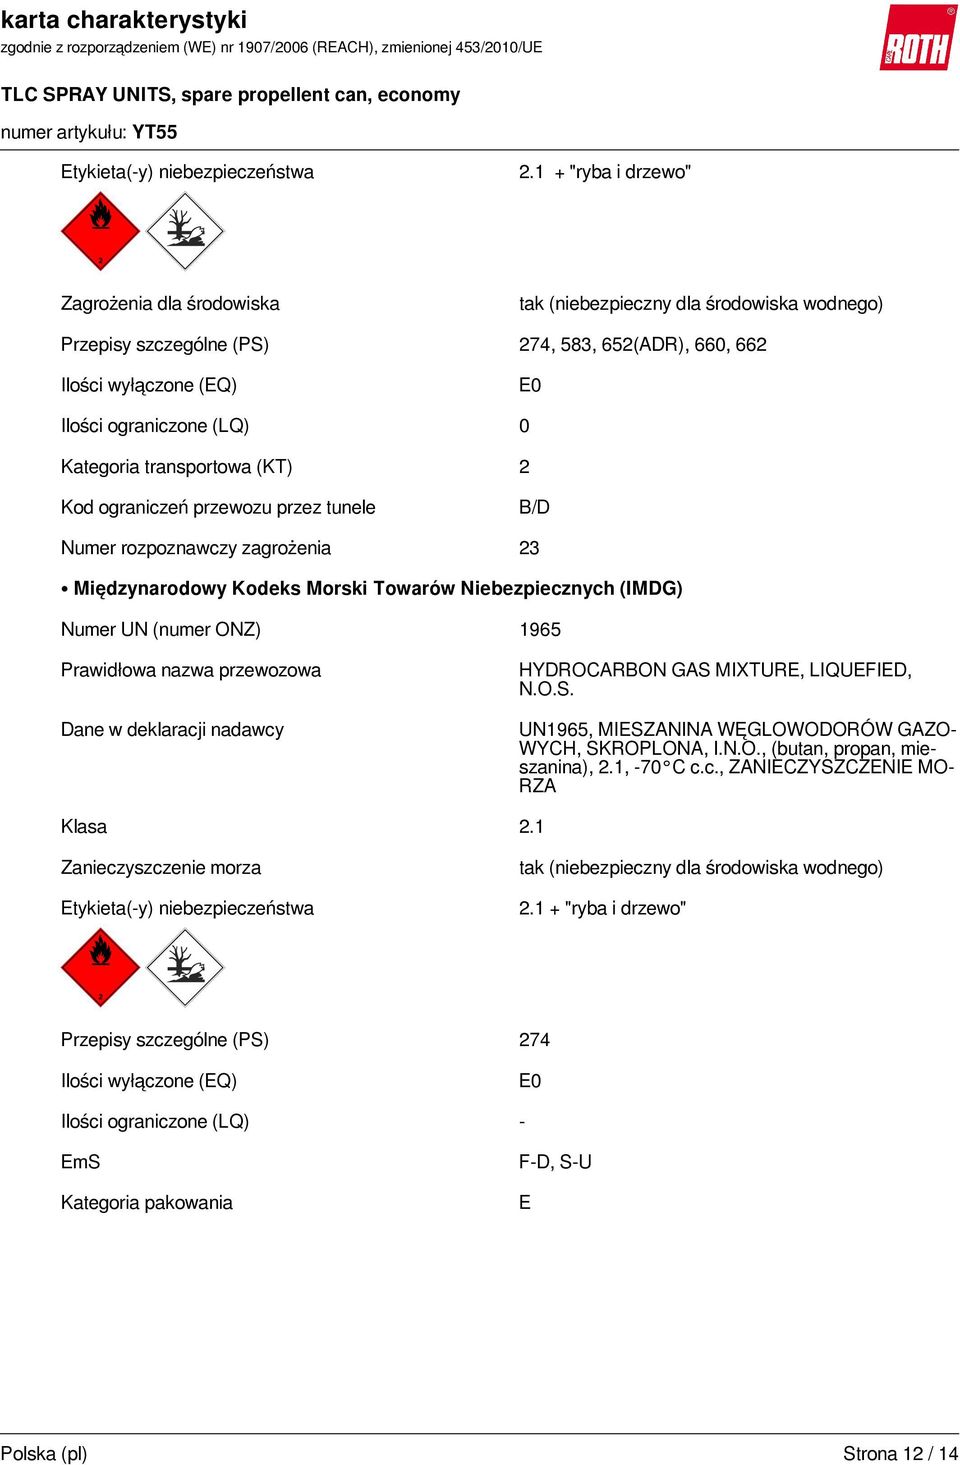 Kategoria transportowa (KT) 2 Kod ograniczeń przewozu przez tunele B/D Numer rozpoznawczy zagrożenia 23 Międzynarodowy Kodeks Morski Towarów Niebezpiecznych (IMDG) Numer UN (numer ONZ) 1965